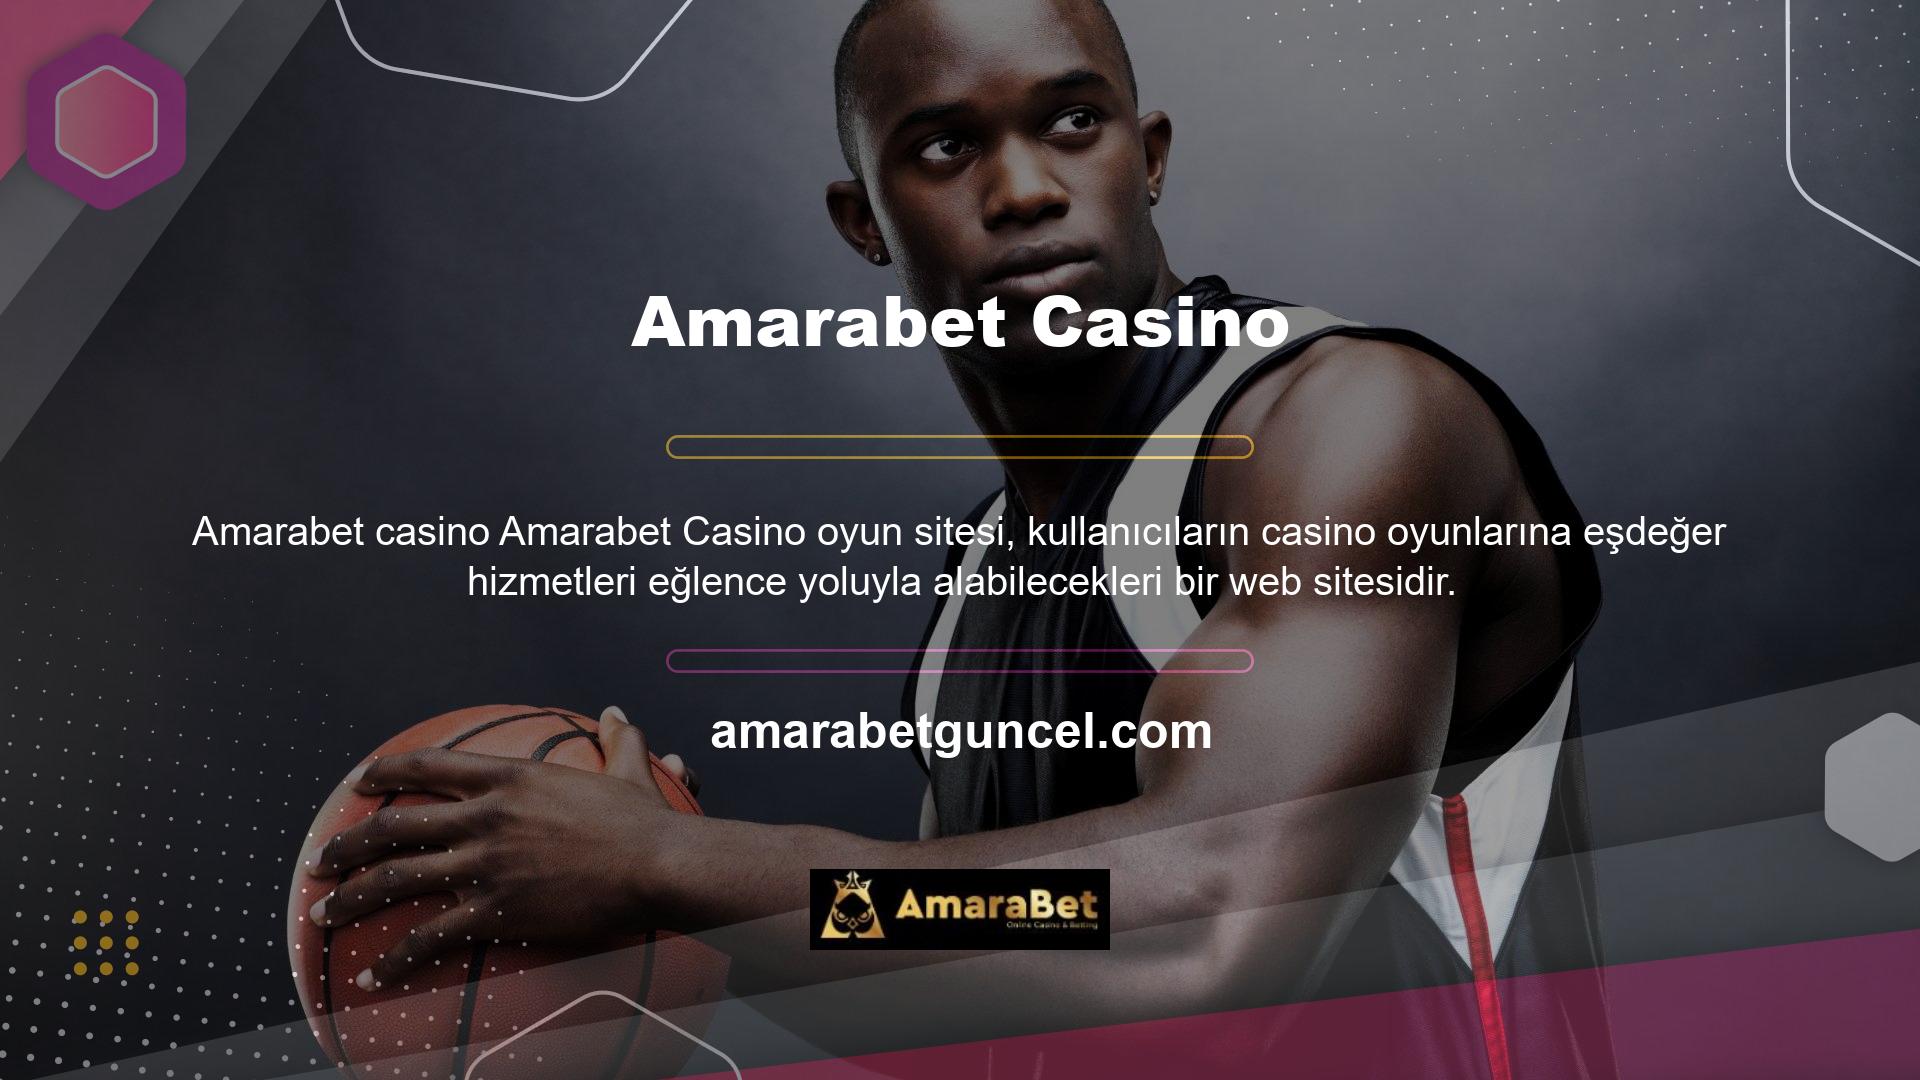 Amarabet yüzlerce farklı PC blackjack oyun seçeneği ve casino kategorisi sunmaktadır